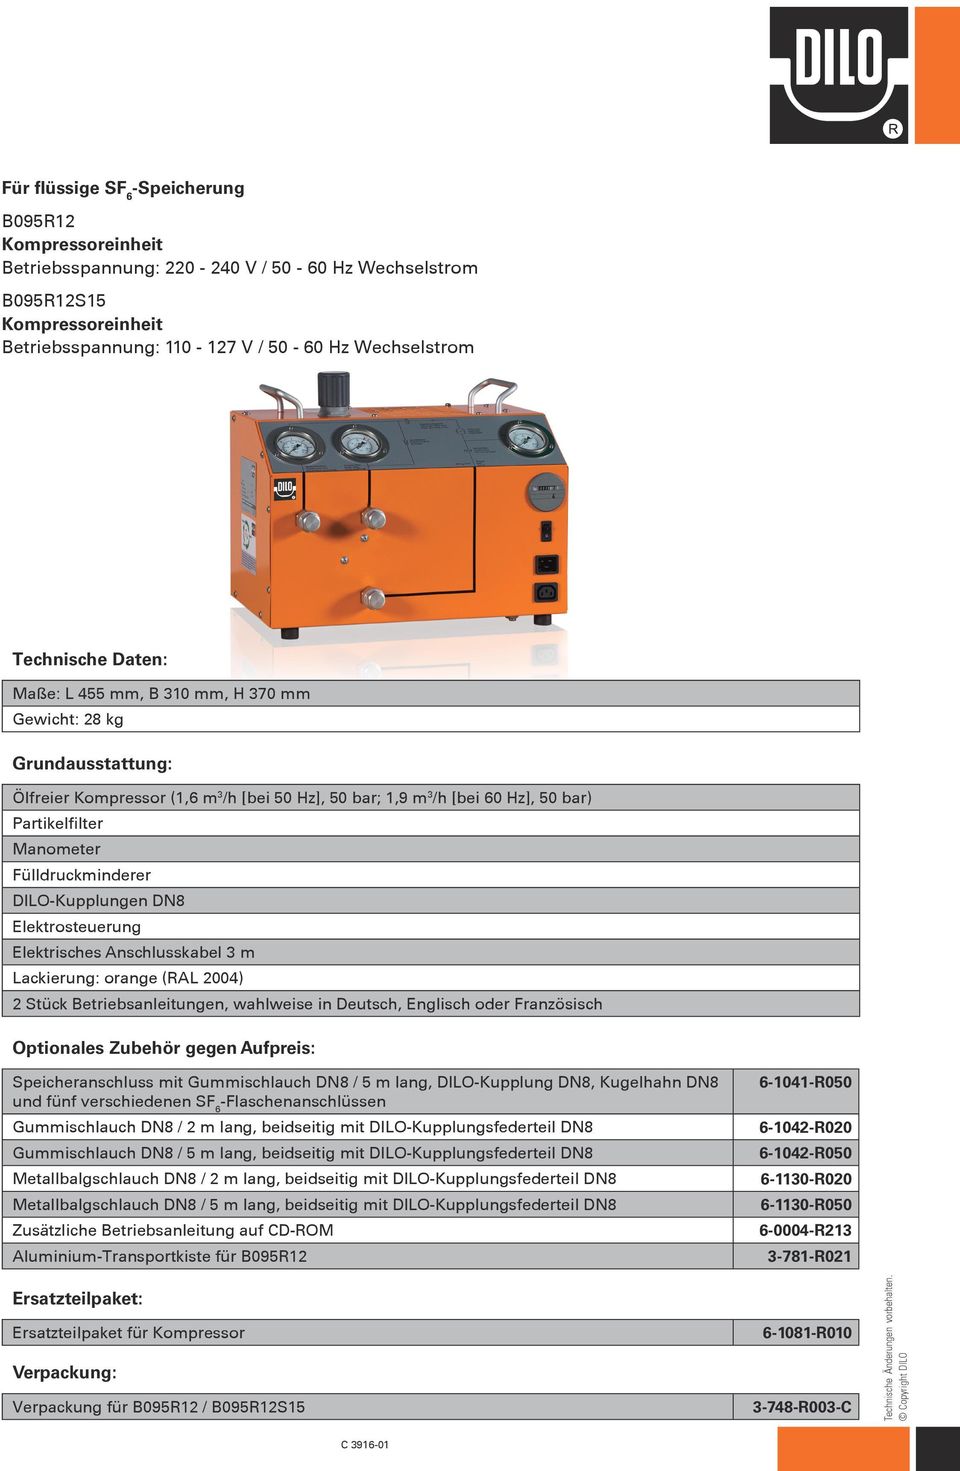 Elektrosteuerung Elektrisches Anschlusskabel 3 m Lackierung: orange (RAL 2004) Speicheranschluss mit Gummischlauch DN8 / 5 m lang, DILO-Kupplung DN8, Kugelhahn DN8 und fünf verschiedenen SF 6